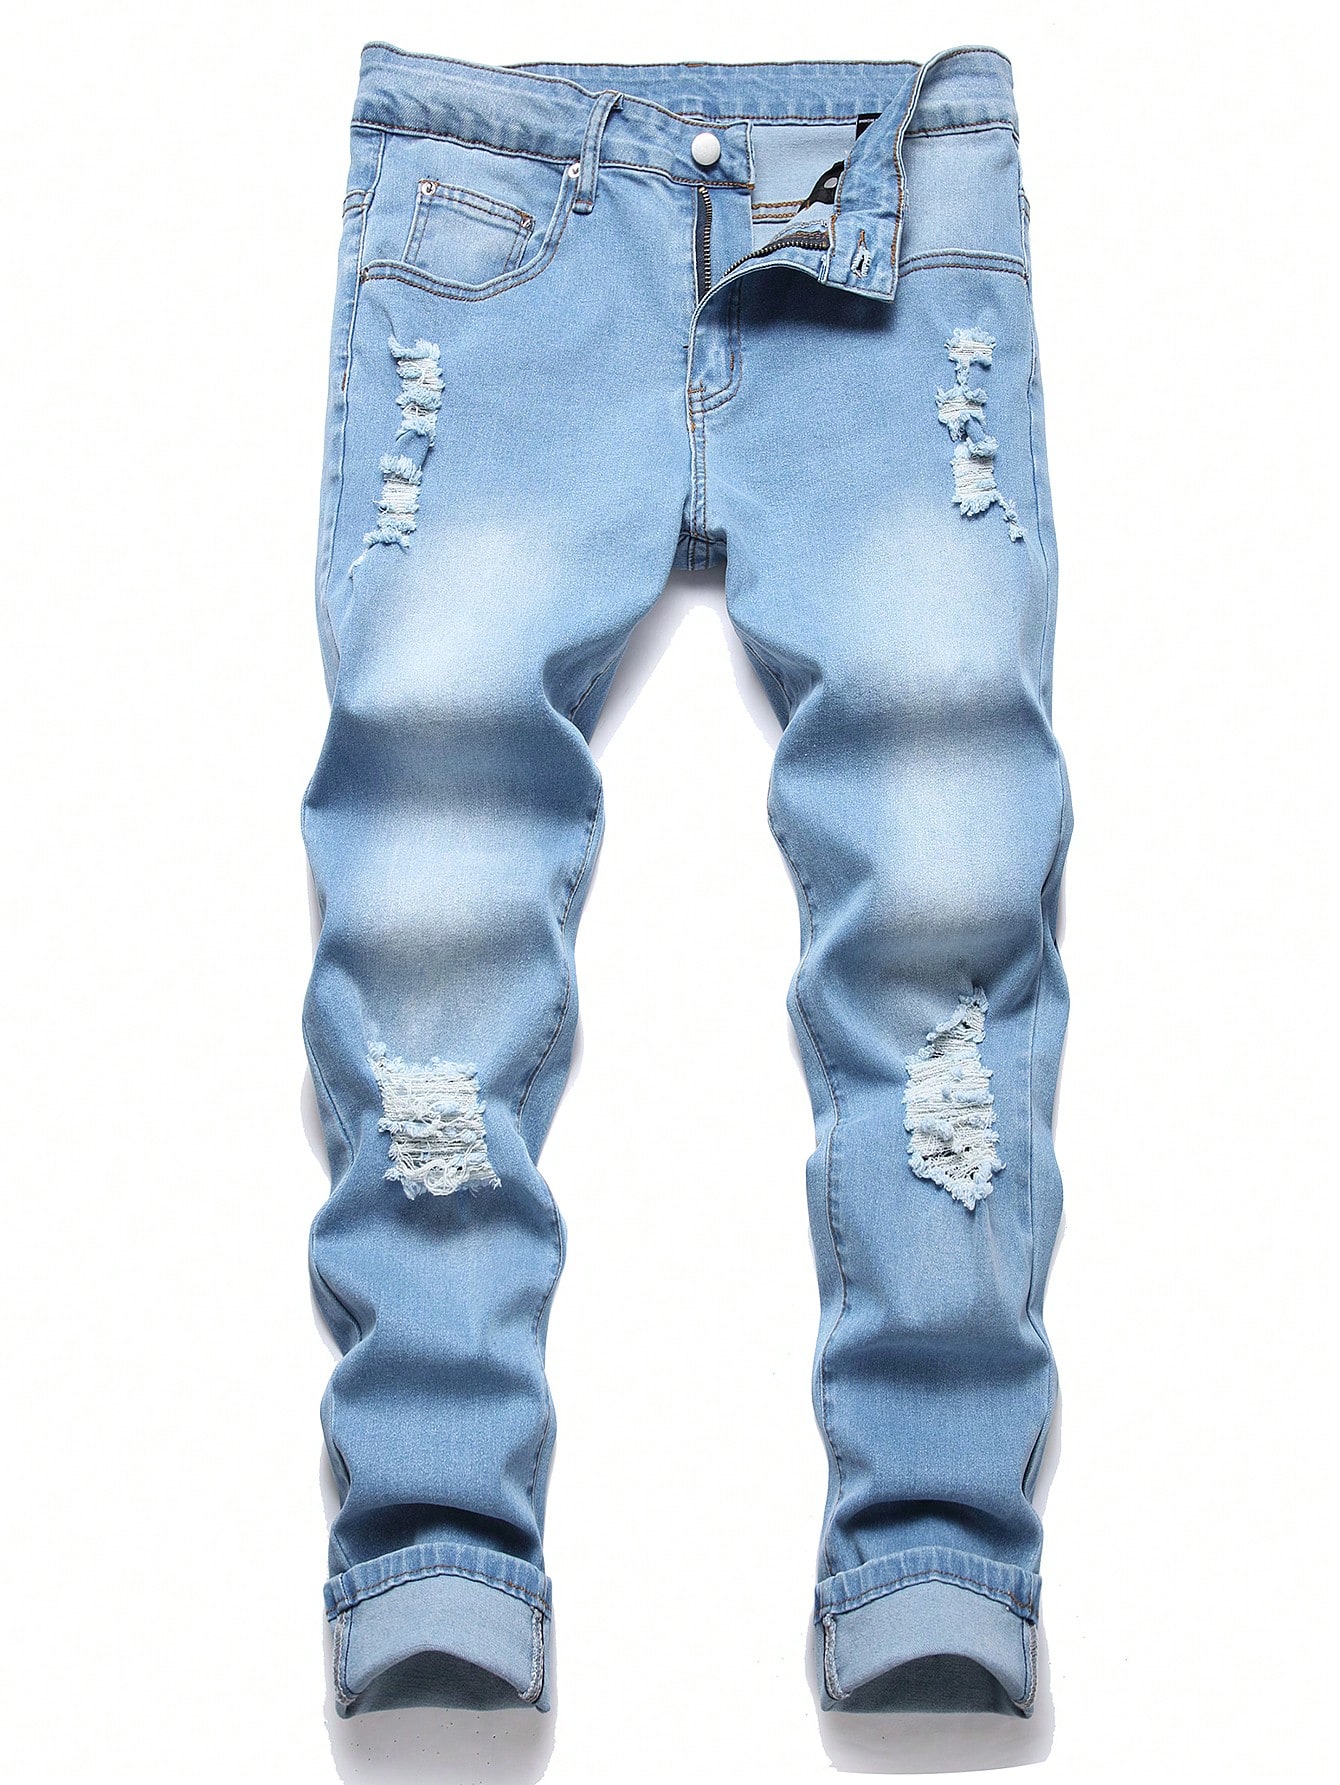 Мужские рваные джинсы скинни Manfinity EMRG, средняя стирка мужские джинсы рваные узкие однотонные винтажные зауженные